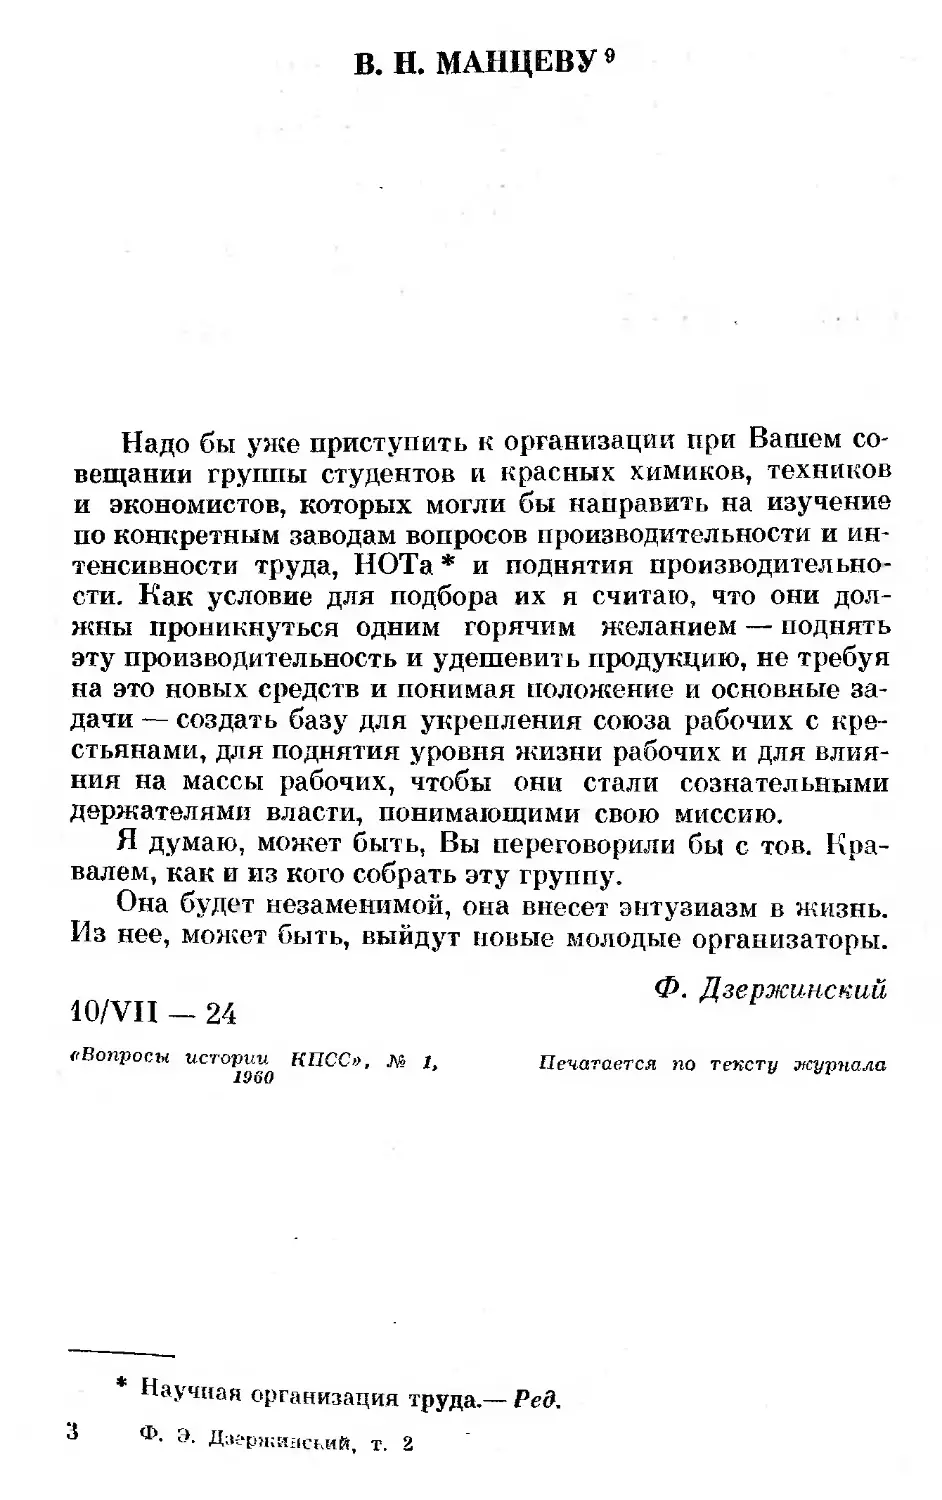 В. Н. Манцеву. 10 июля 1924 г